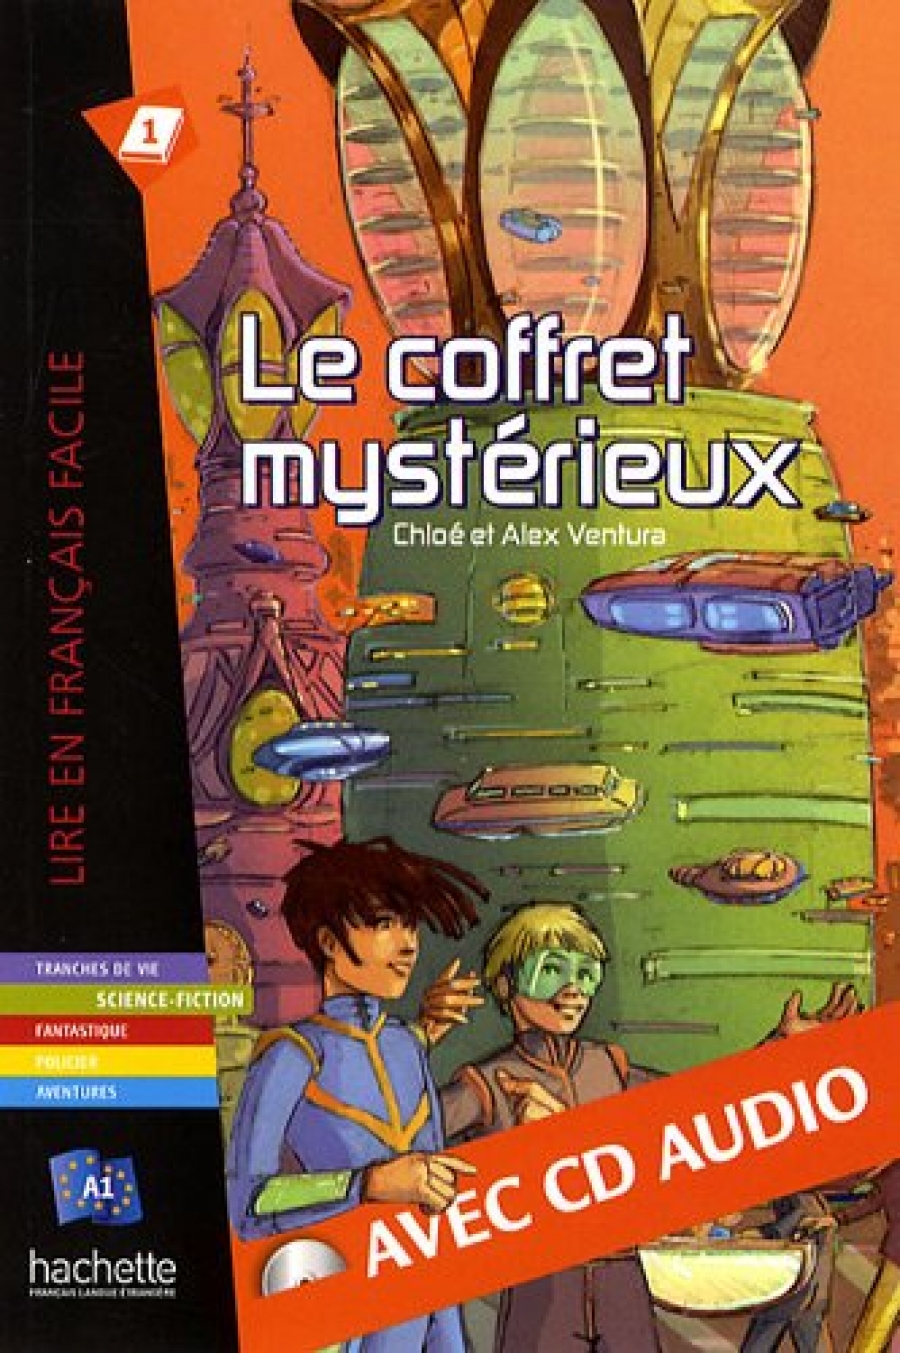 Le Coffret mysterieux + CD audio (C. Ventura, A. Ventura) 